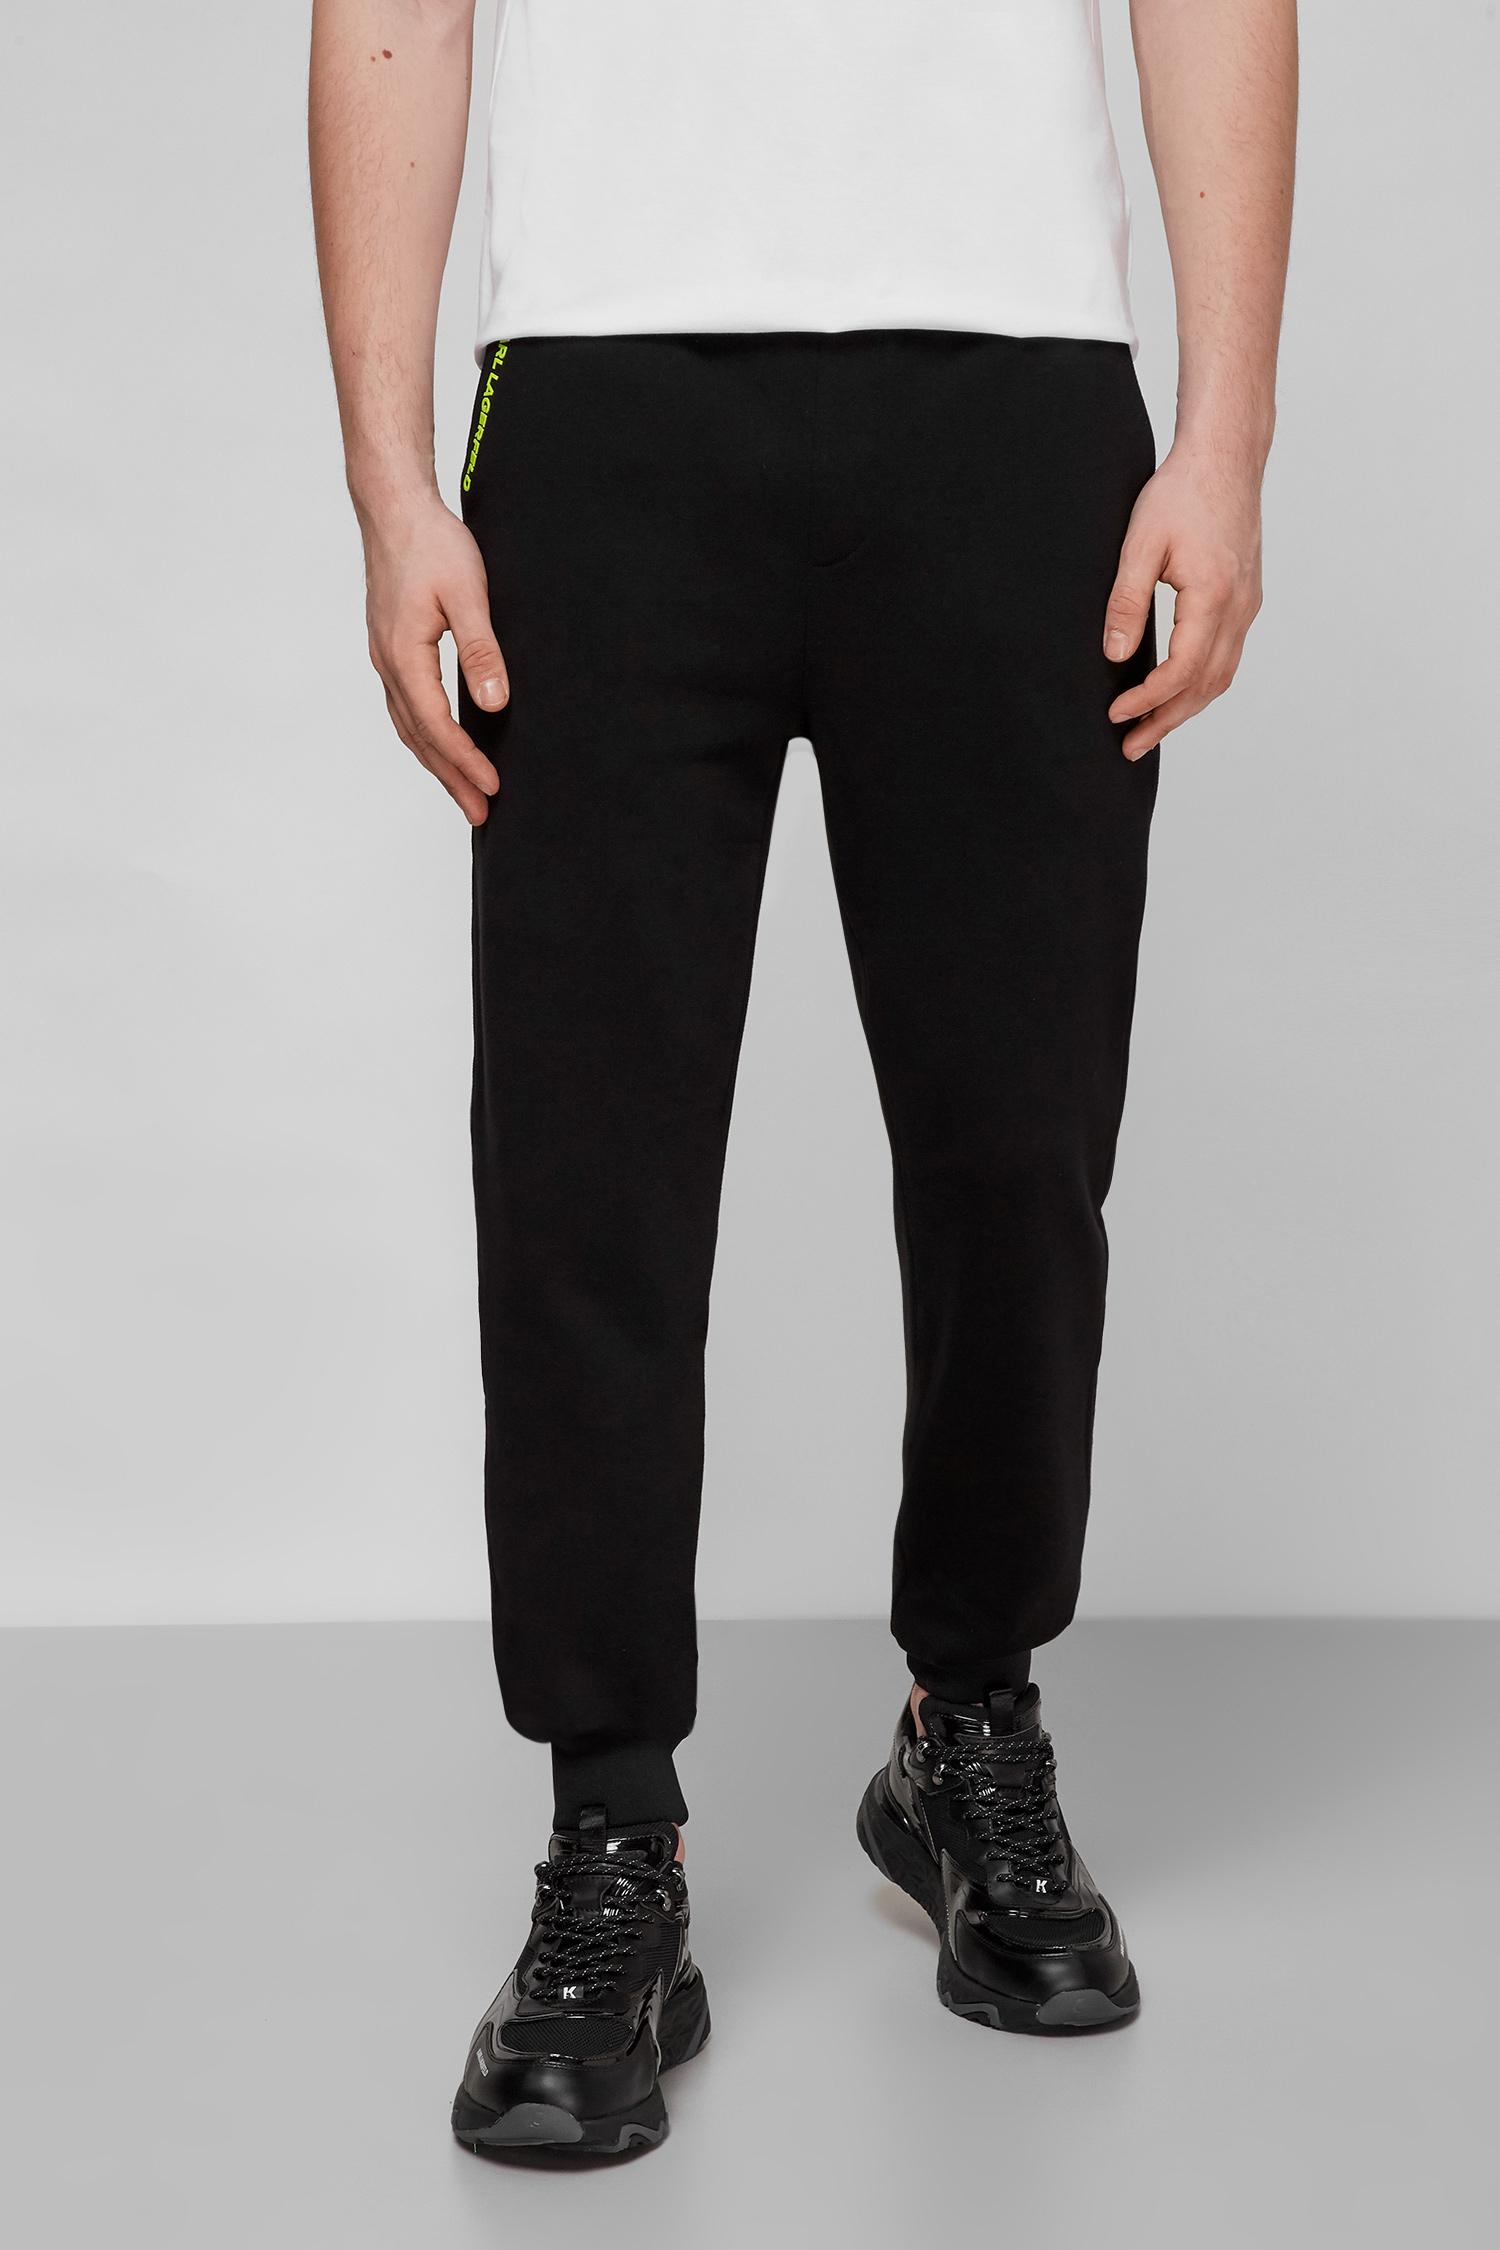 Чорні спортивні штани для хлопців Karl Lagerfeld 521900.705423;120